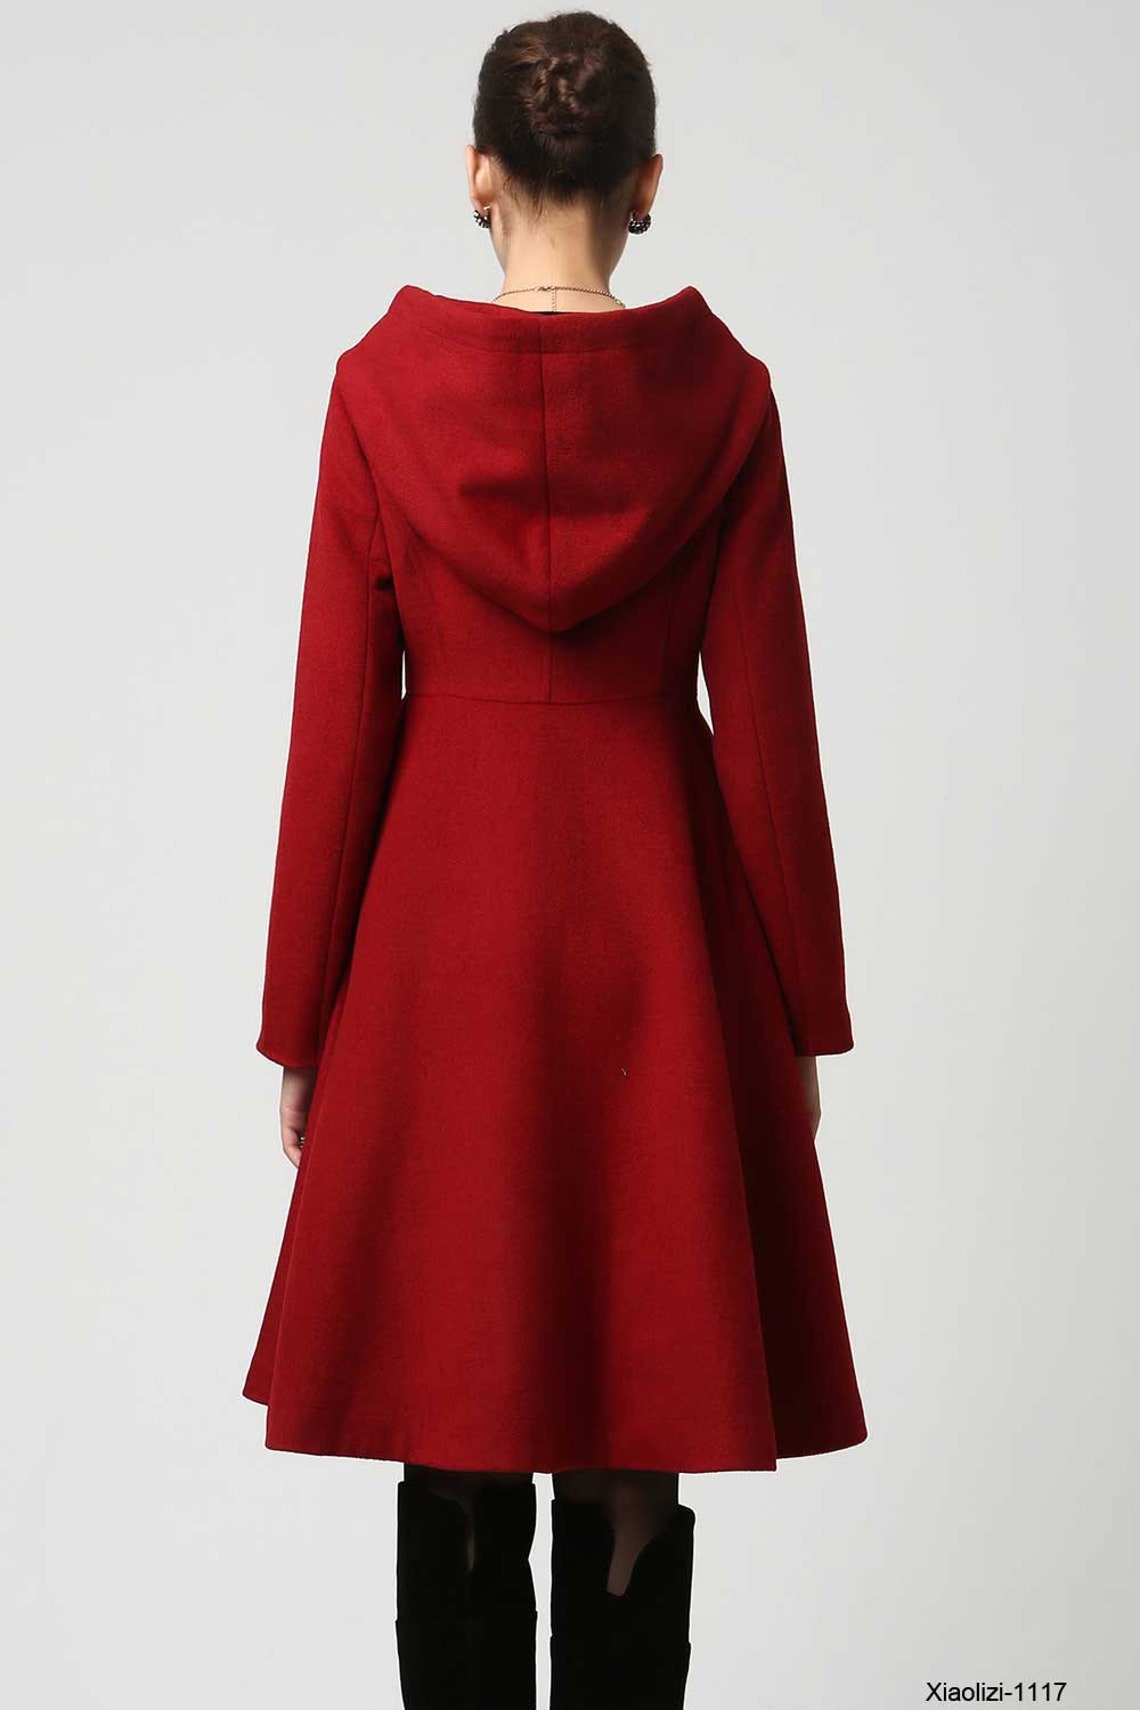 Red swing hooded princess coat Women's Winter Single | Etsy